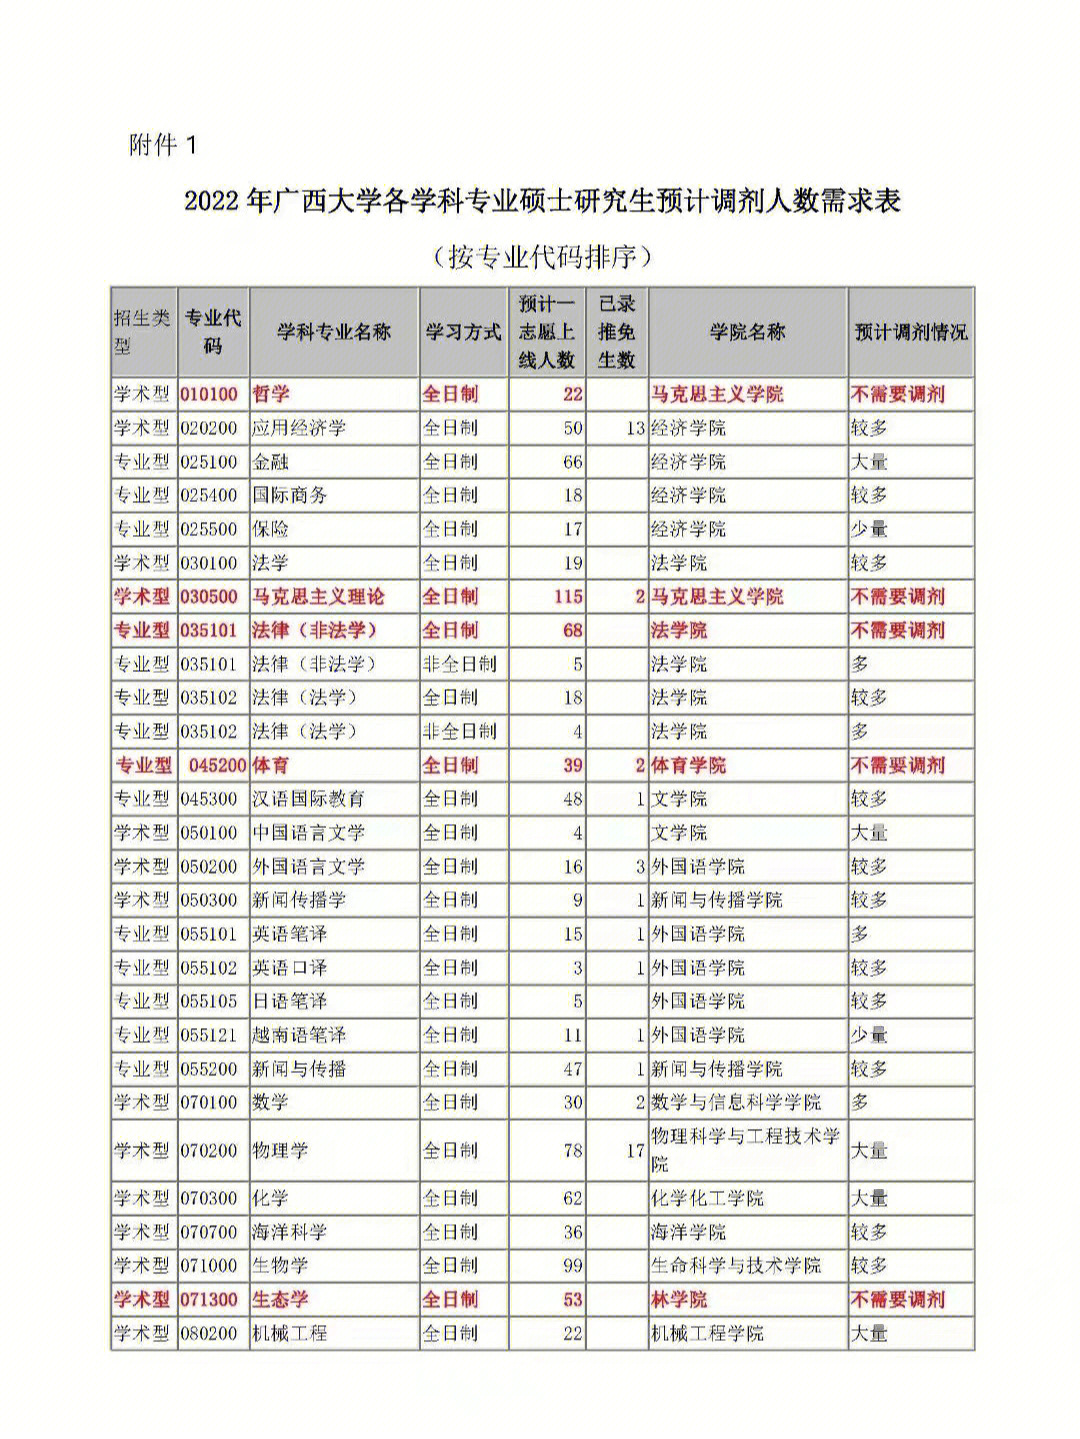 67广西大学2022年学硕士研究生招生考试复试调剂公告结合目前已经